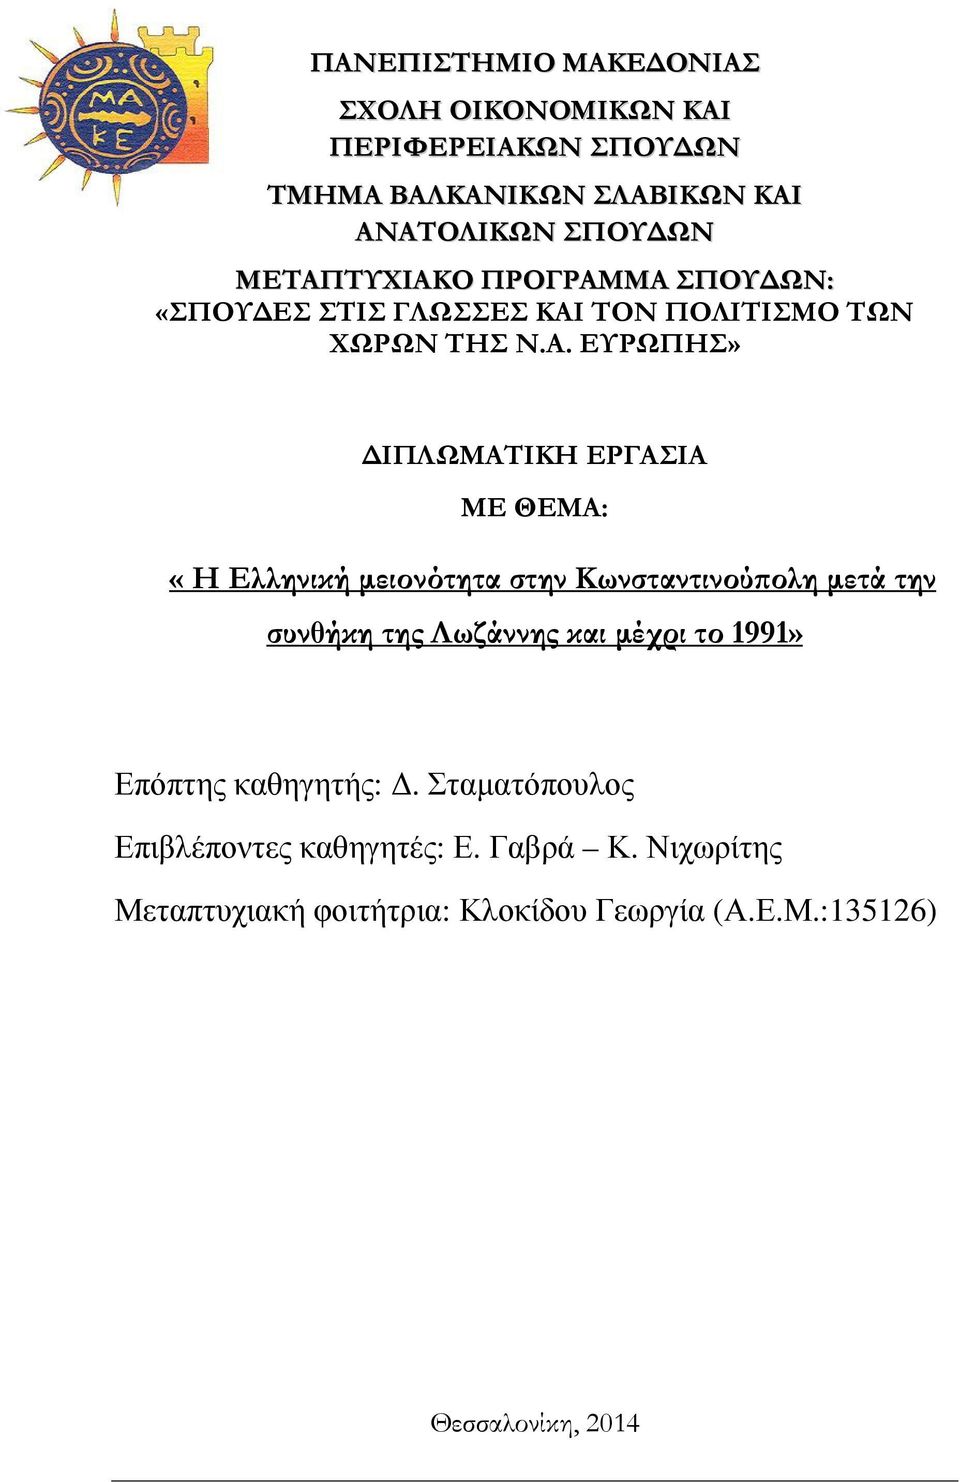 ΘΕΜΑ: «Η Ελληνική µειονότητα στην Κωνσταντινού ολη µετά την συνθήκη της Λωζάννης και µέχρι το 1991» Επόπτης καθηγητής:.